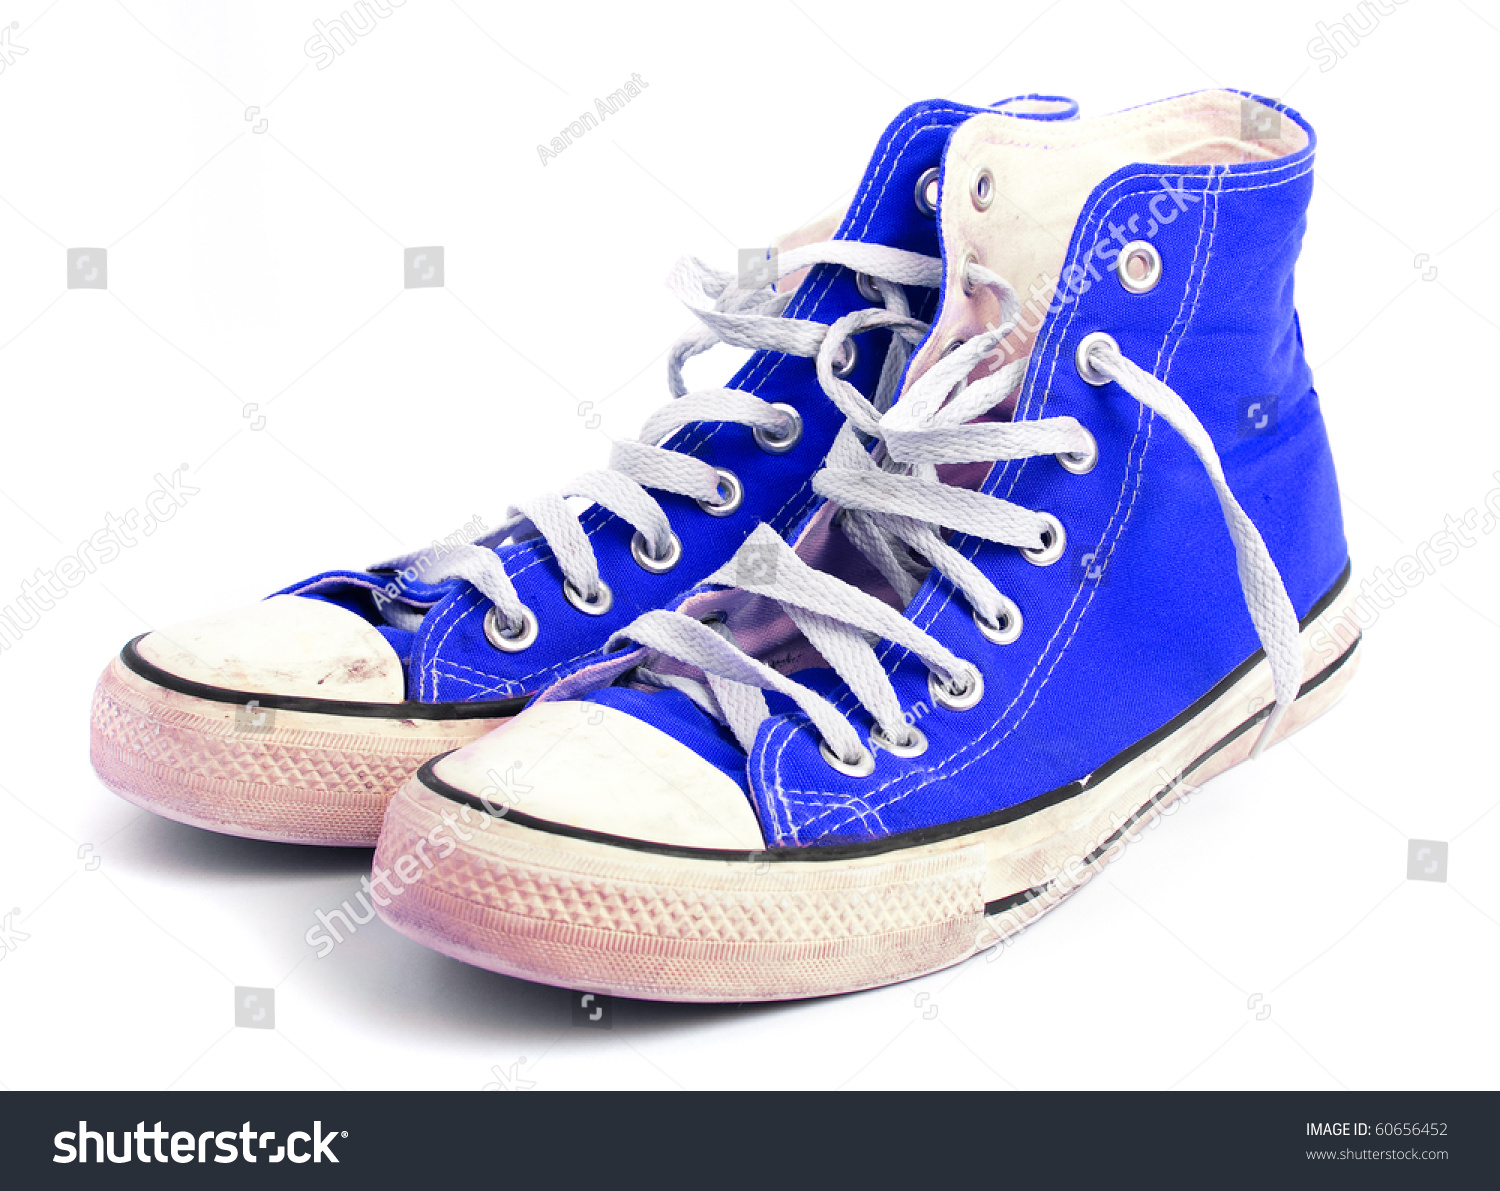 Blue Sneaker Stock Photo 60656452 : Shutterstock